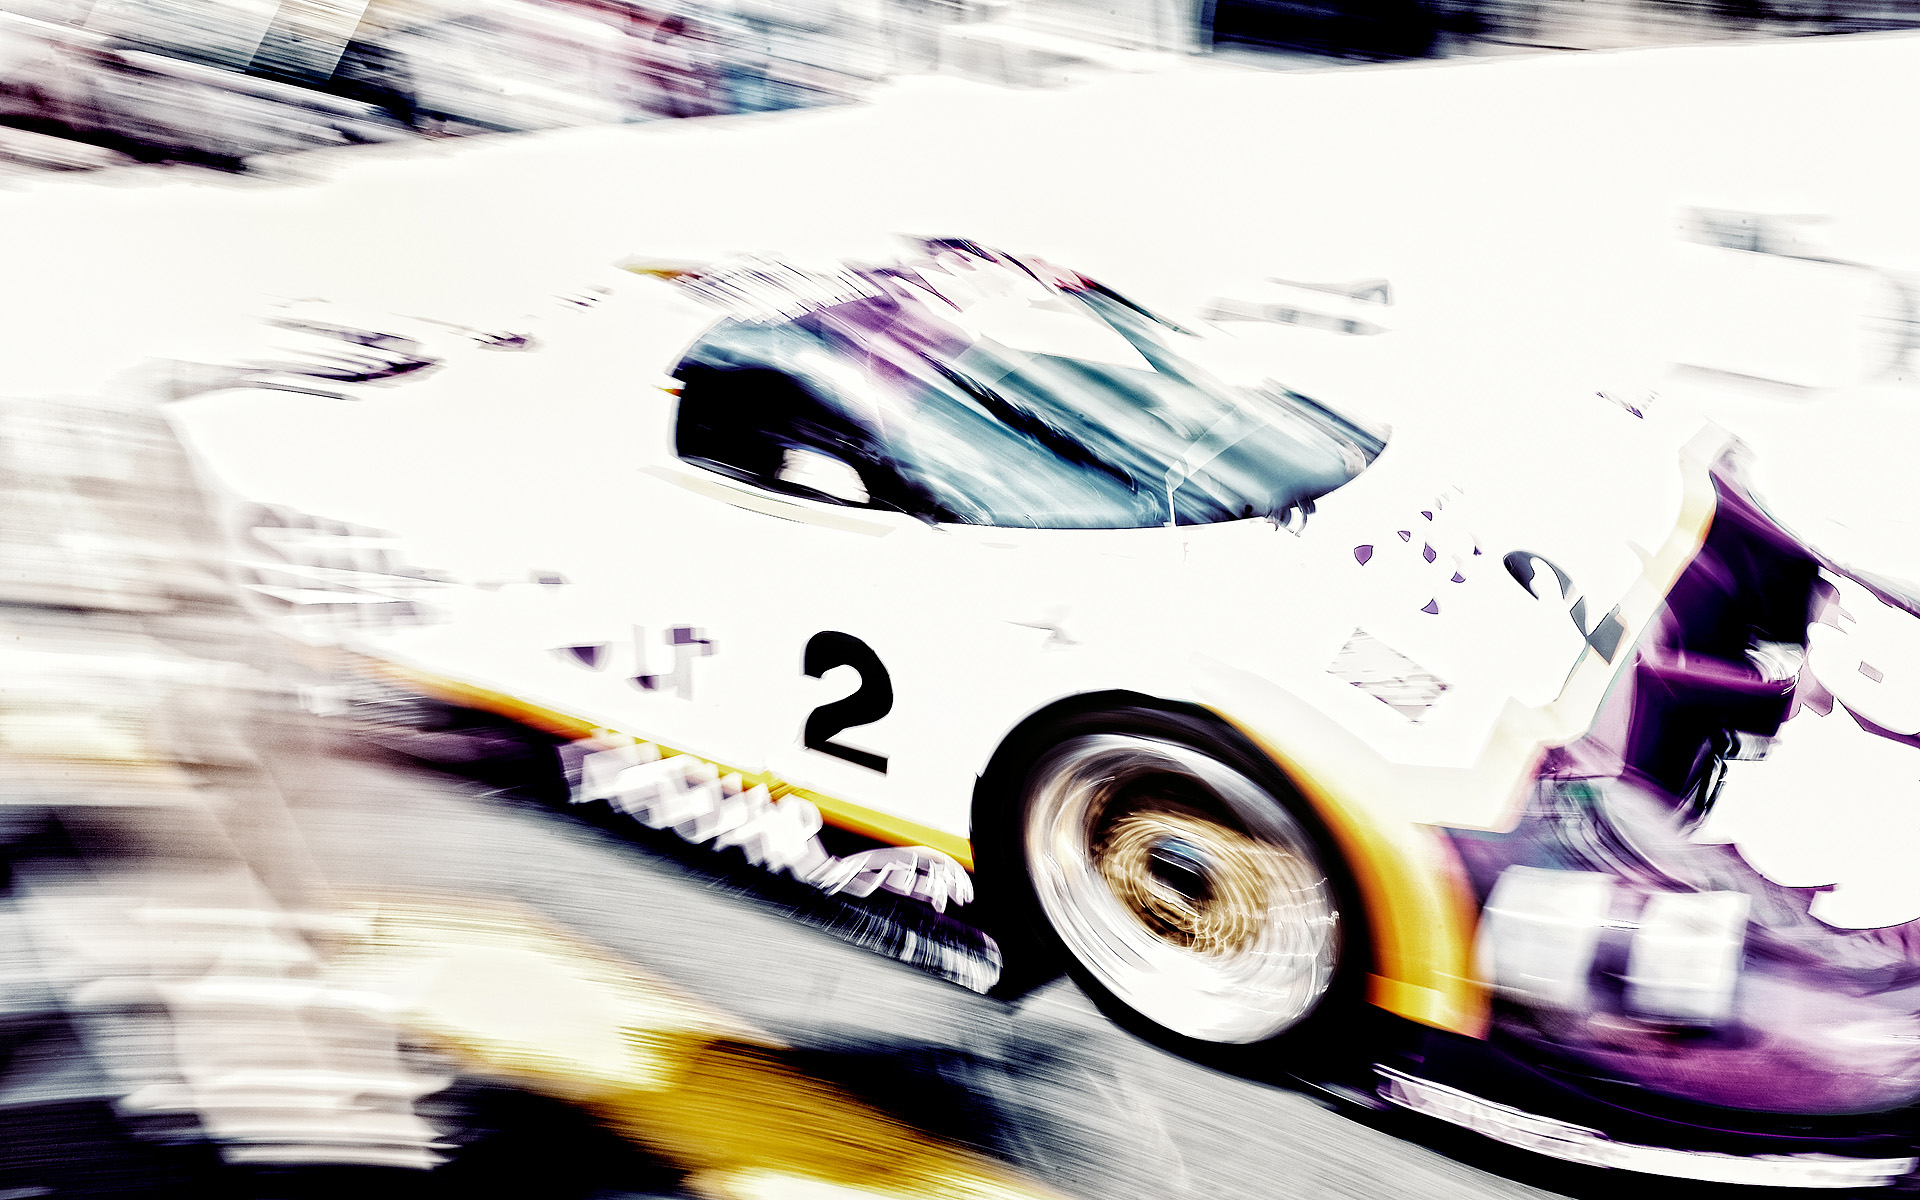 Le Mans Jaguar photographed by Automotive Photographer